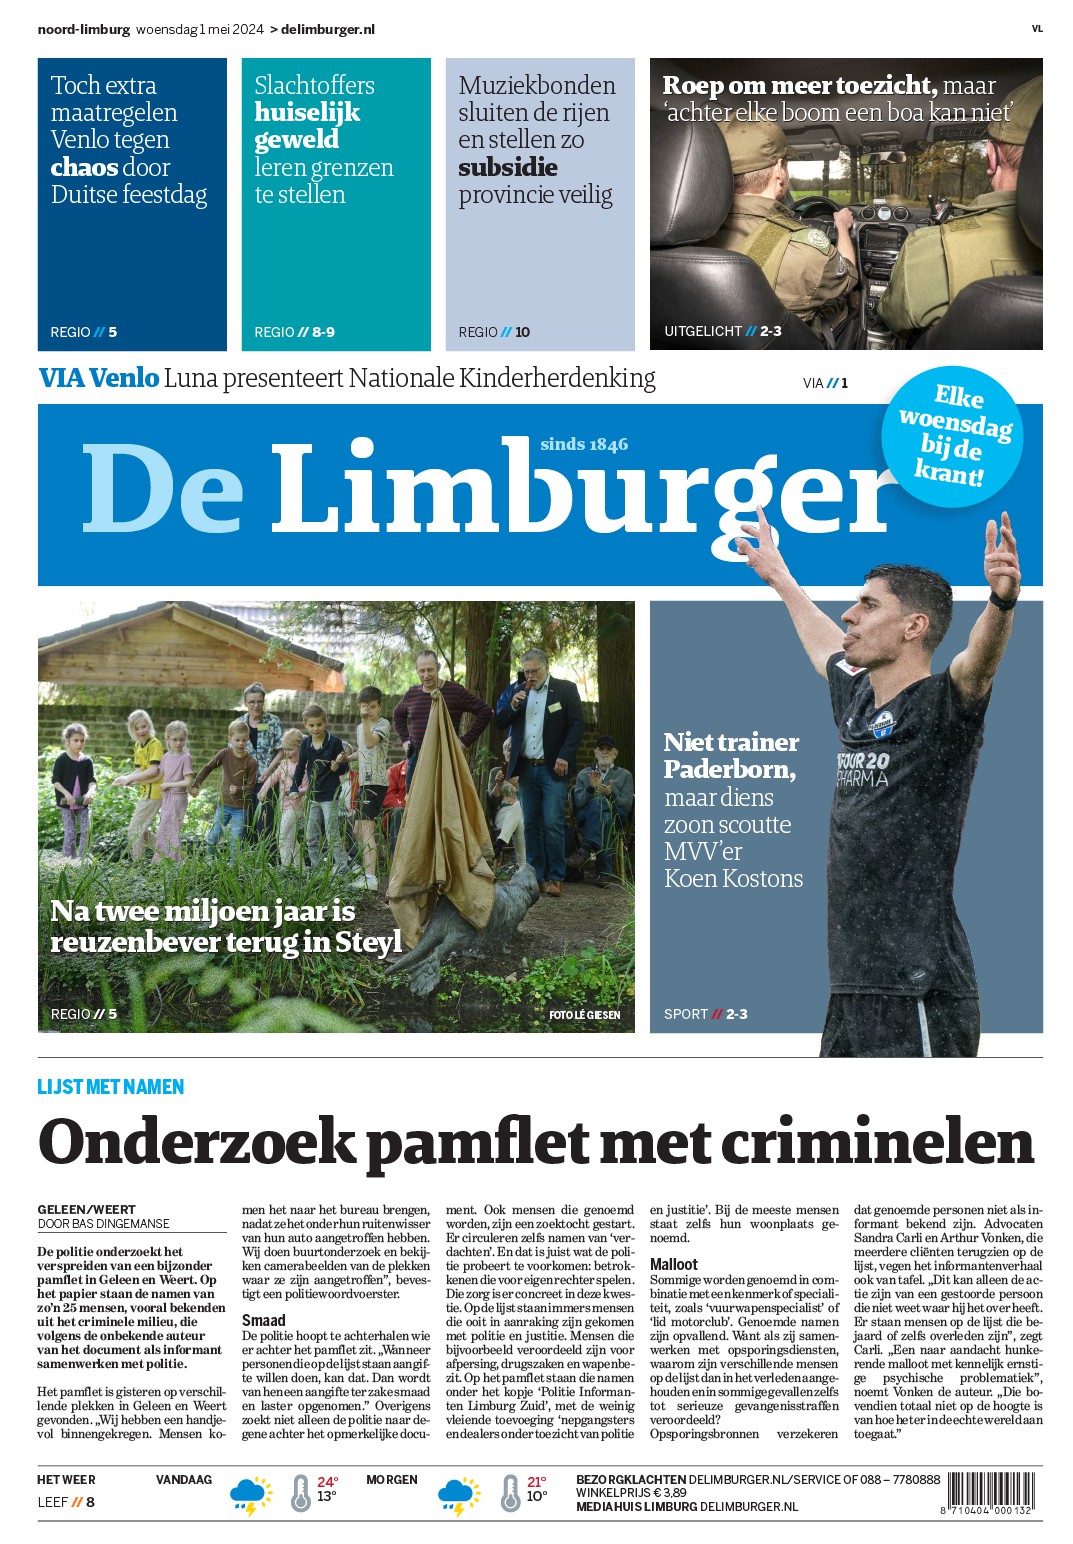 De Limburger - Digitale krant